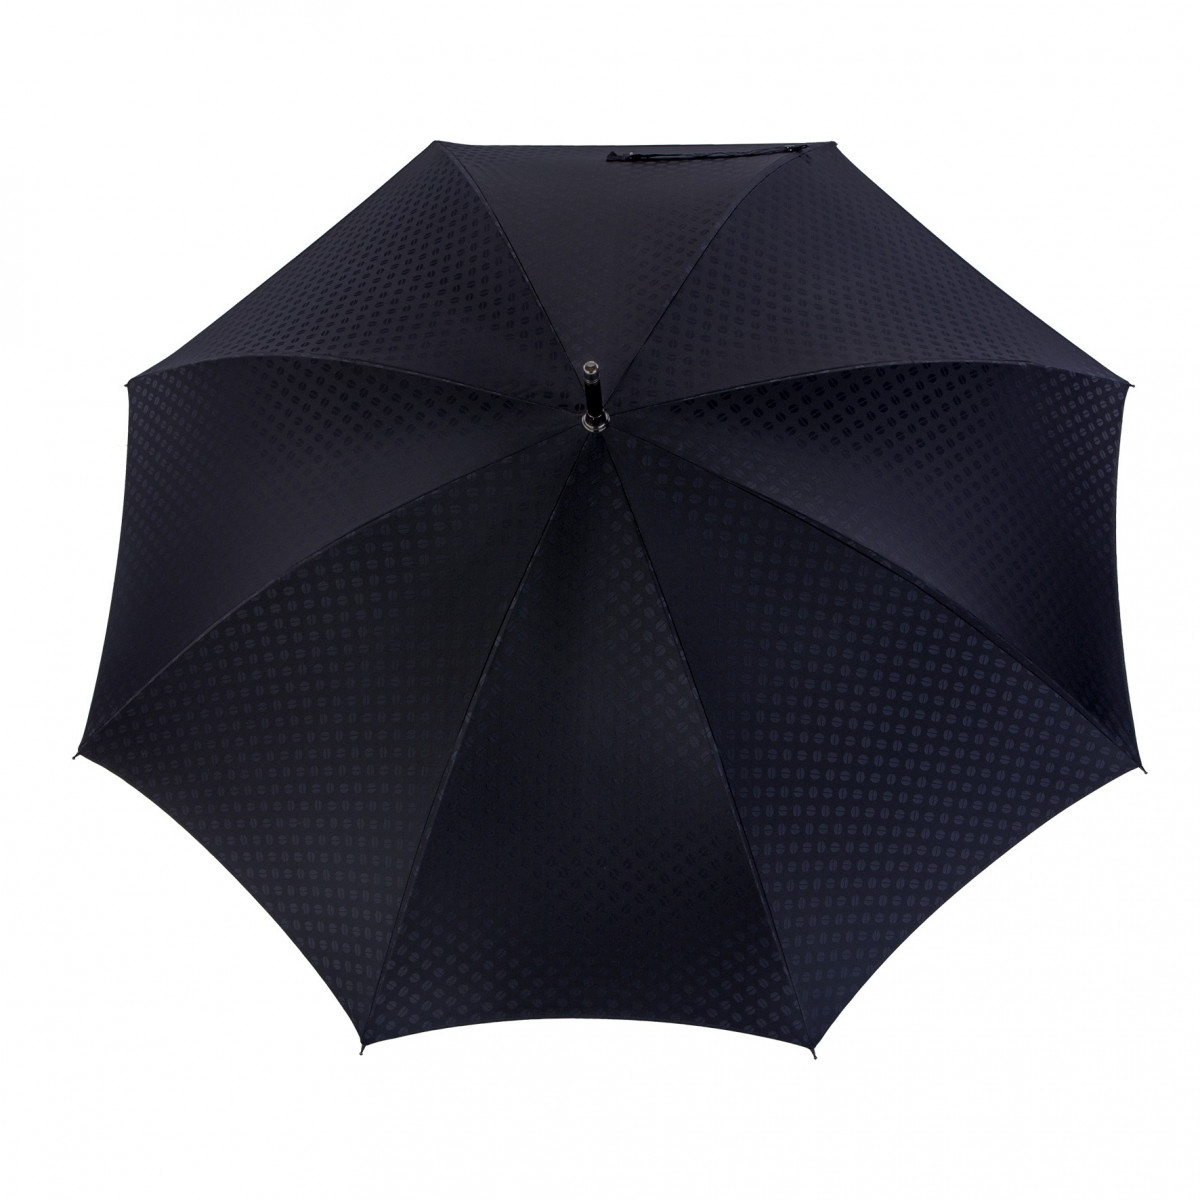 Achat d'un Grand Parapluie Canne Noir pour Homme - Parapluies à Ouverture  Manuelle - Piganiol